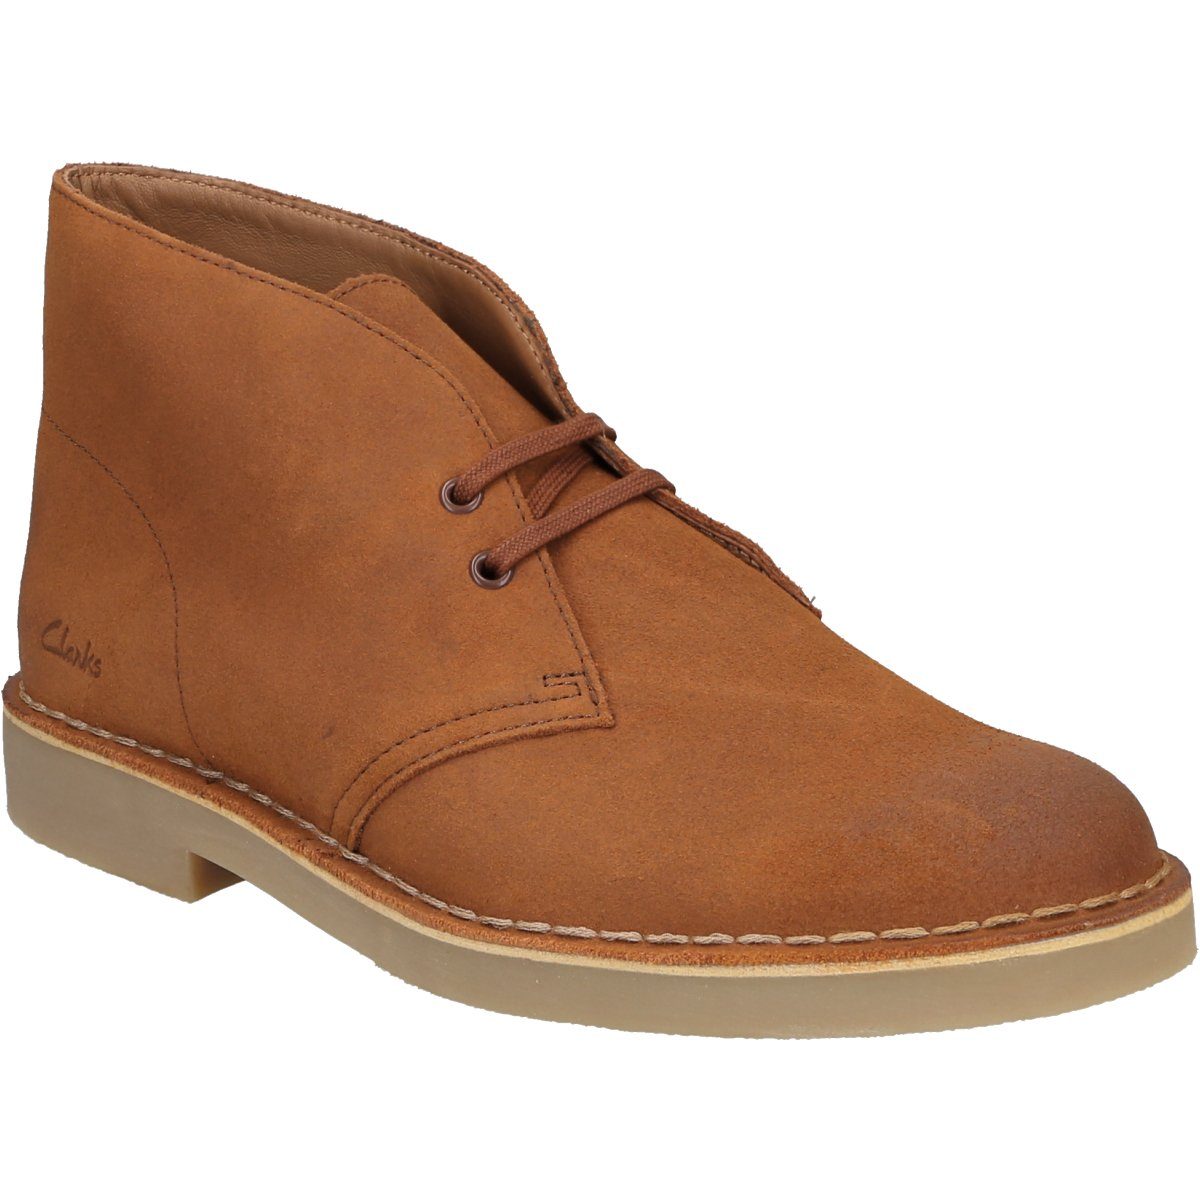 Clarks Desert Boot 2 Stiefel online kaufen | OTTO